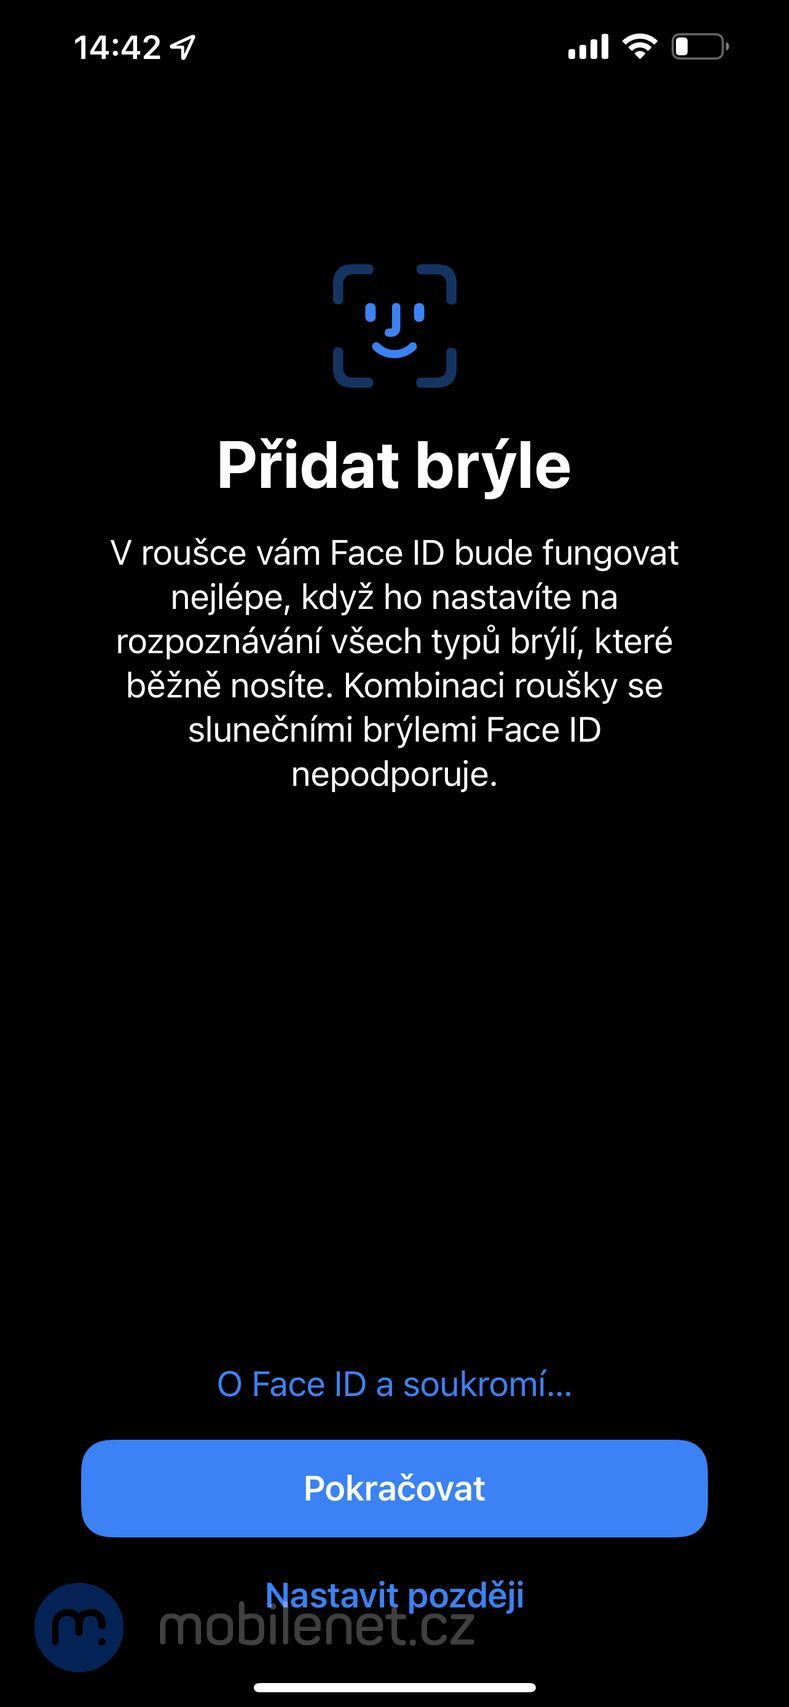 iOS 15.4 - Face ID